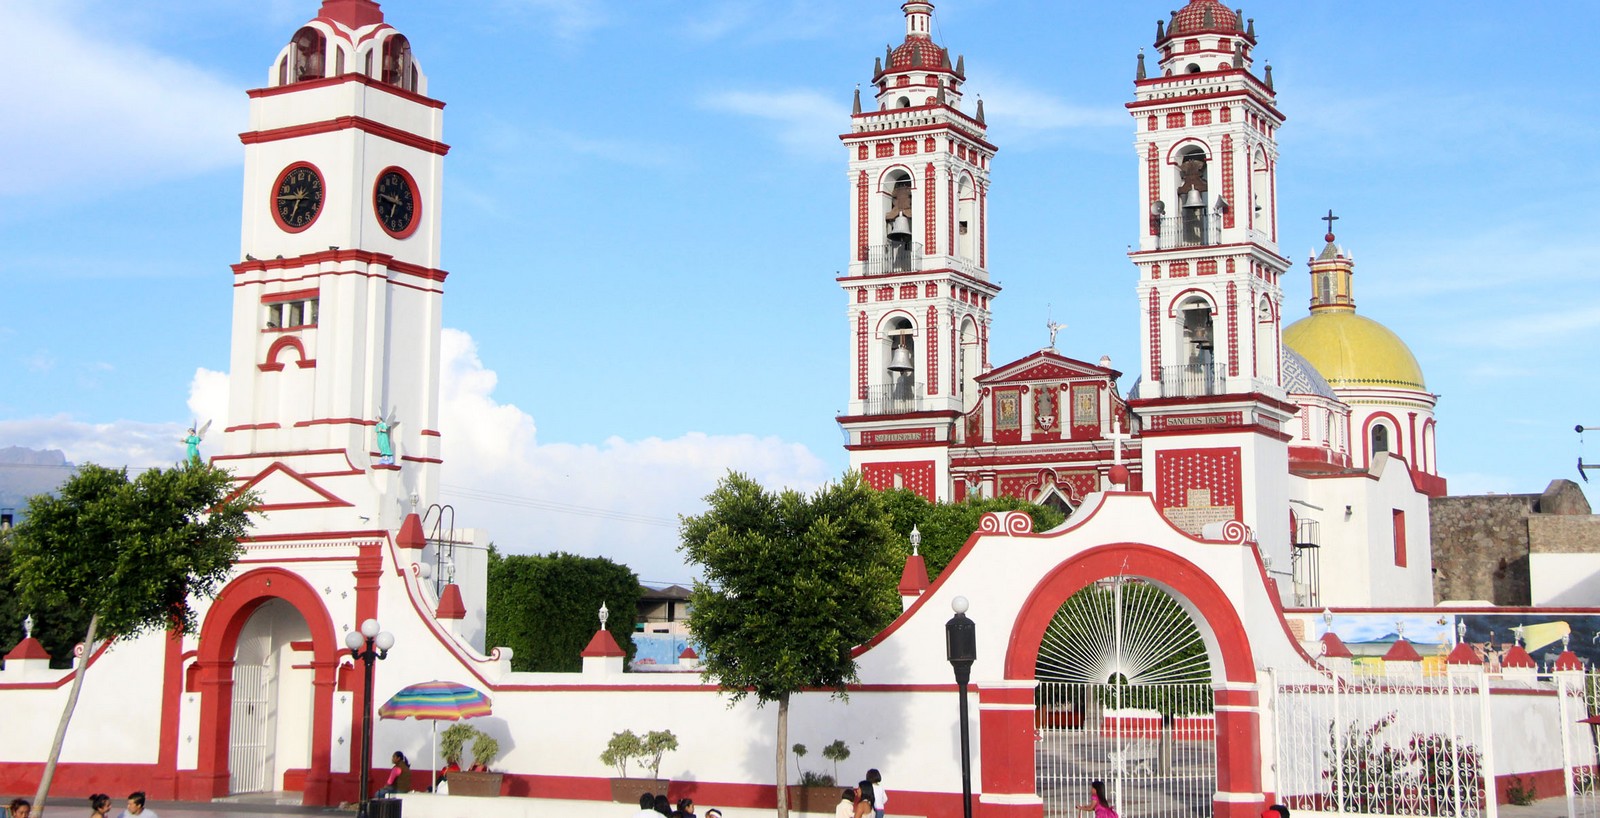 Apariciones de San Miguel Arcángel en el Milagro de Tlaxcala, Mexico (25 abr, 8 may, 29 sep)